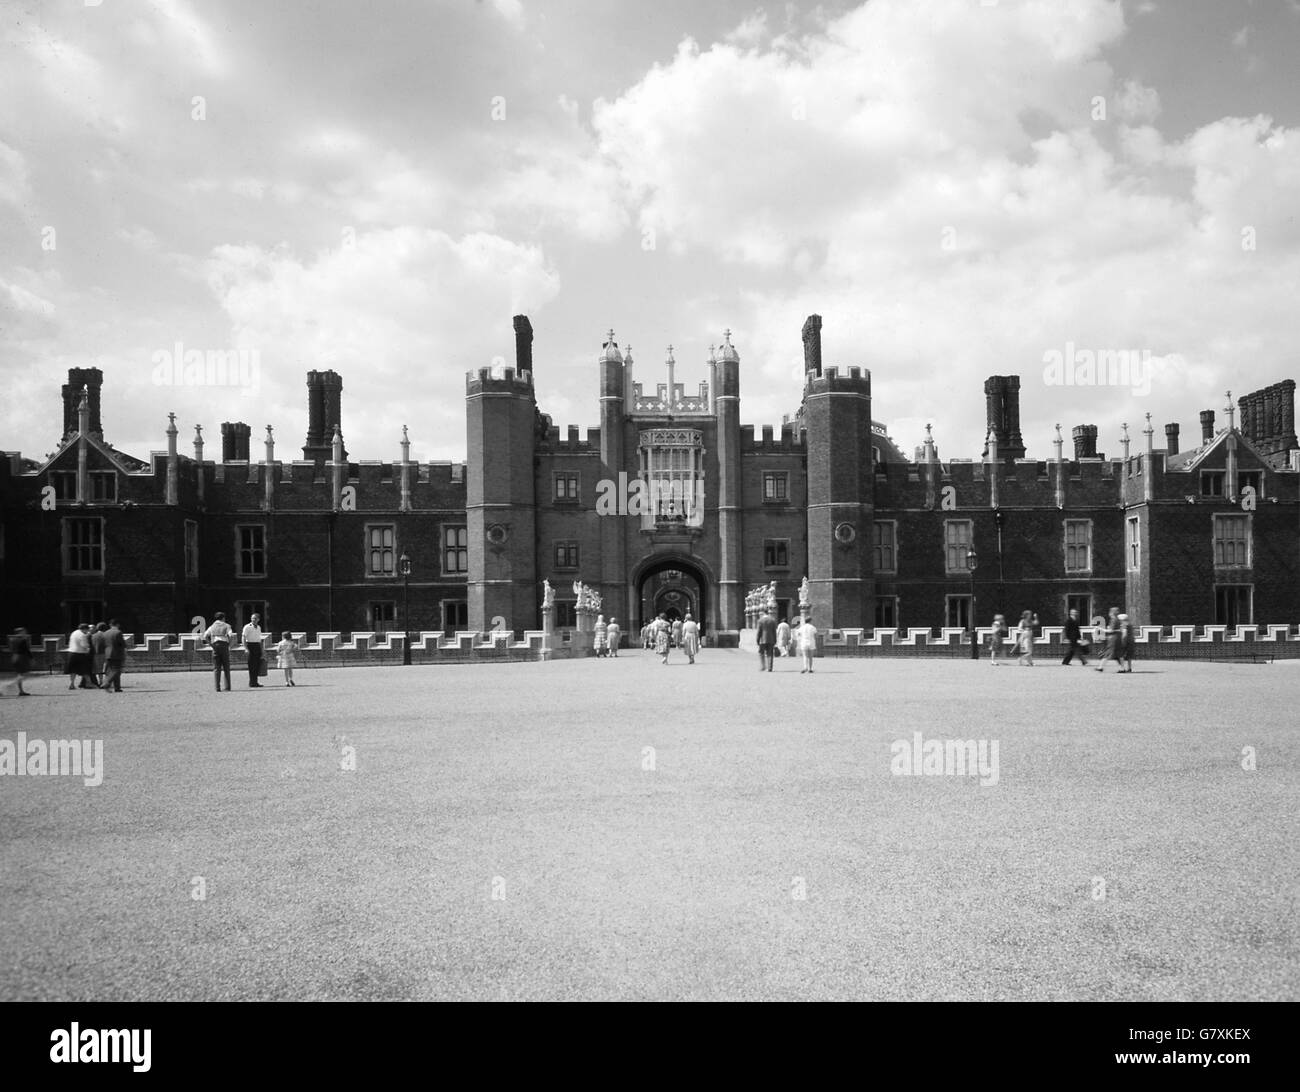 Edifici e monumenti - Hampton Court Palace - Middlesex. Hampton Court Palace, costruito nel 1514 per il cardinale Thomas Wolsey, e in seguito di proprietà del re Enrico VIII Foto Stock